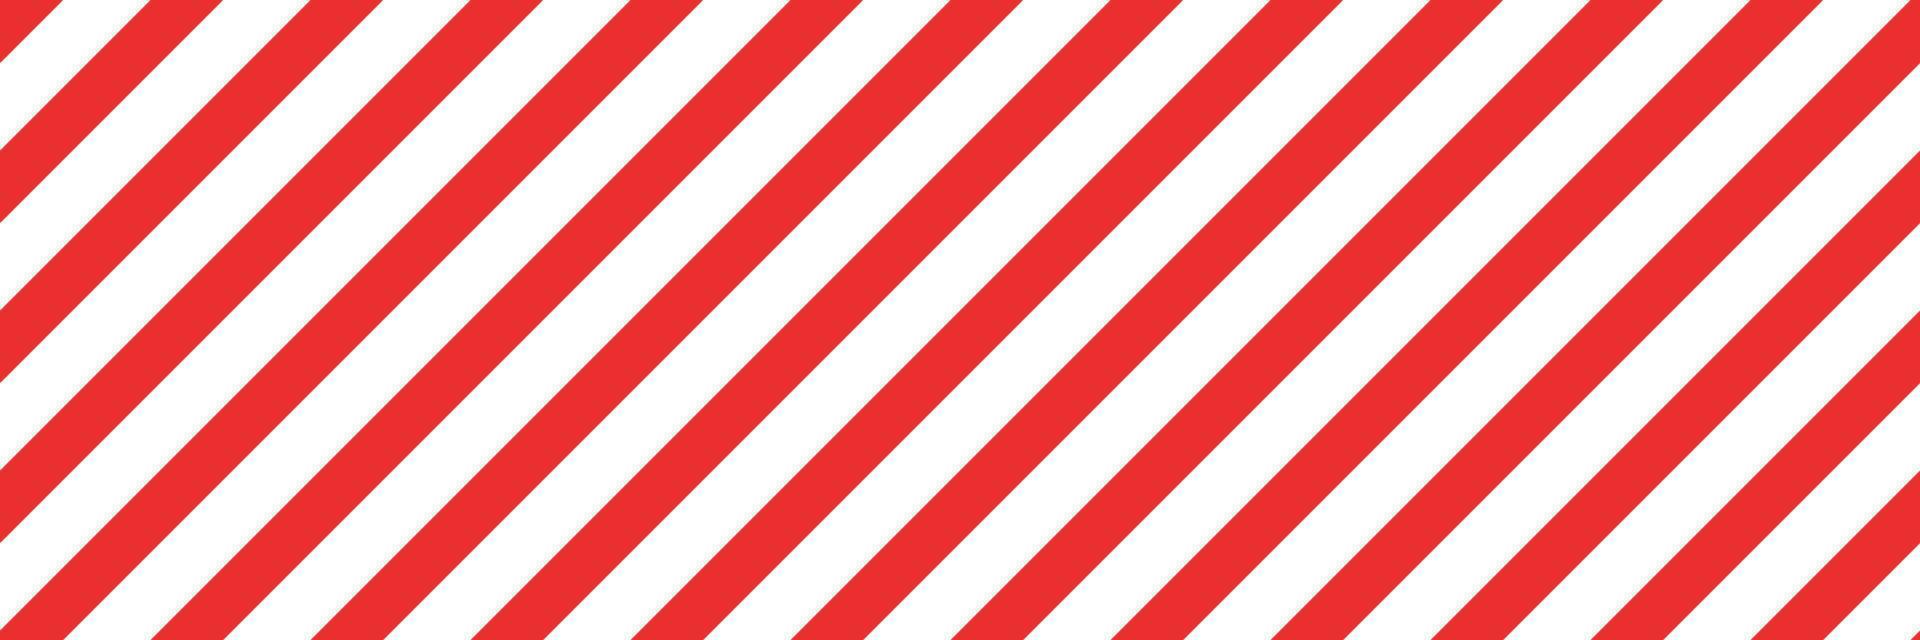 kerst candy cane gestreepte naadloze patroon. kerst candycane achtergrond met rode strepen. karamel diagonale print. xmas traditionele inwikkeling textuur. vector illustratie